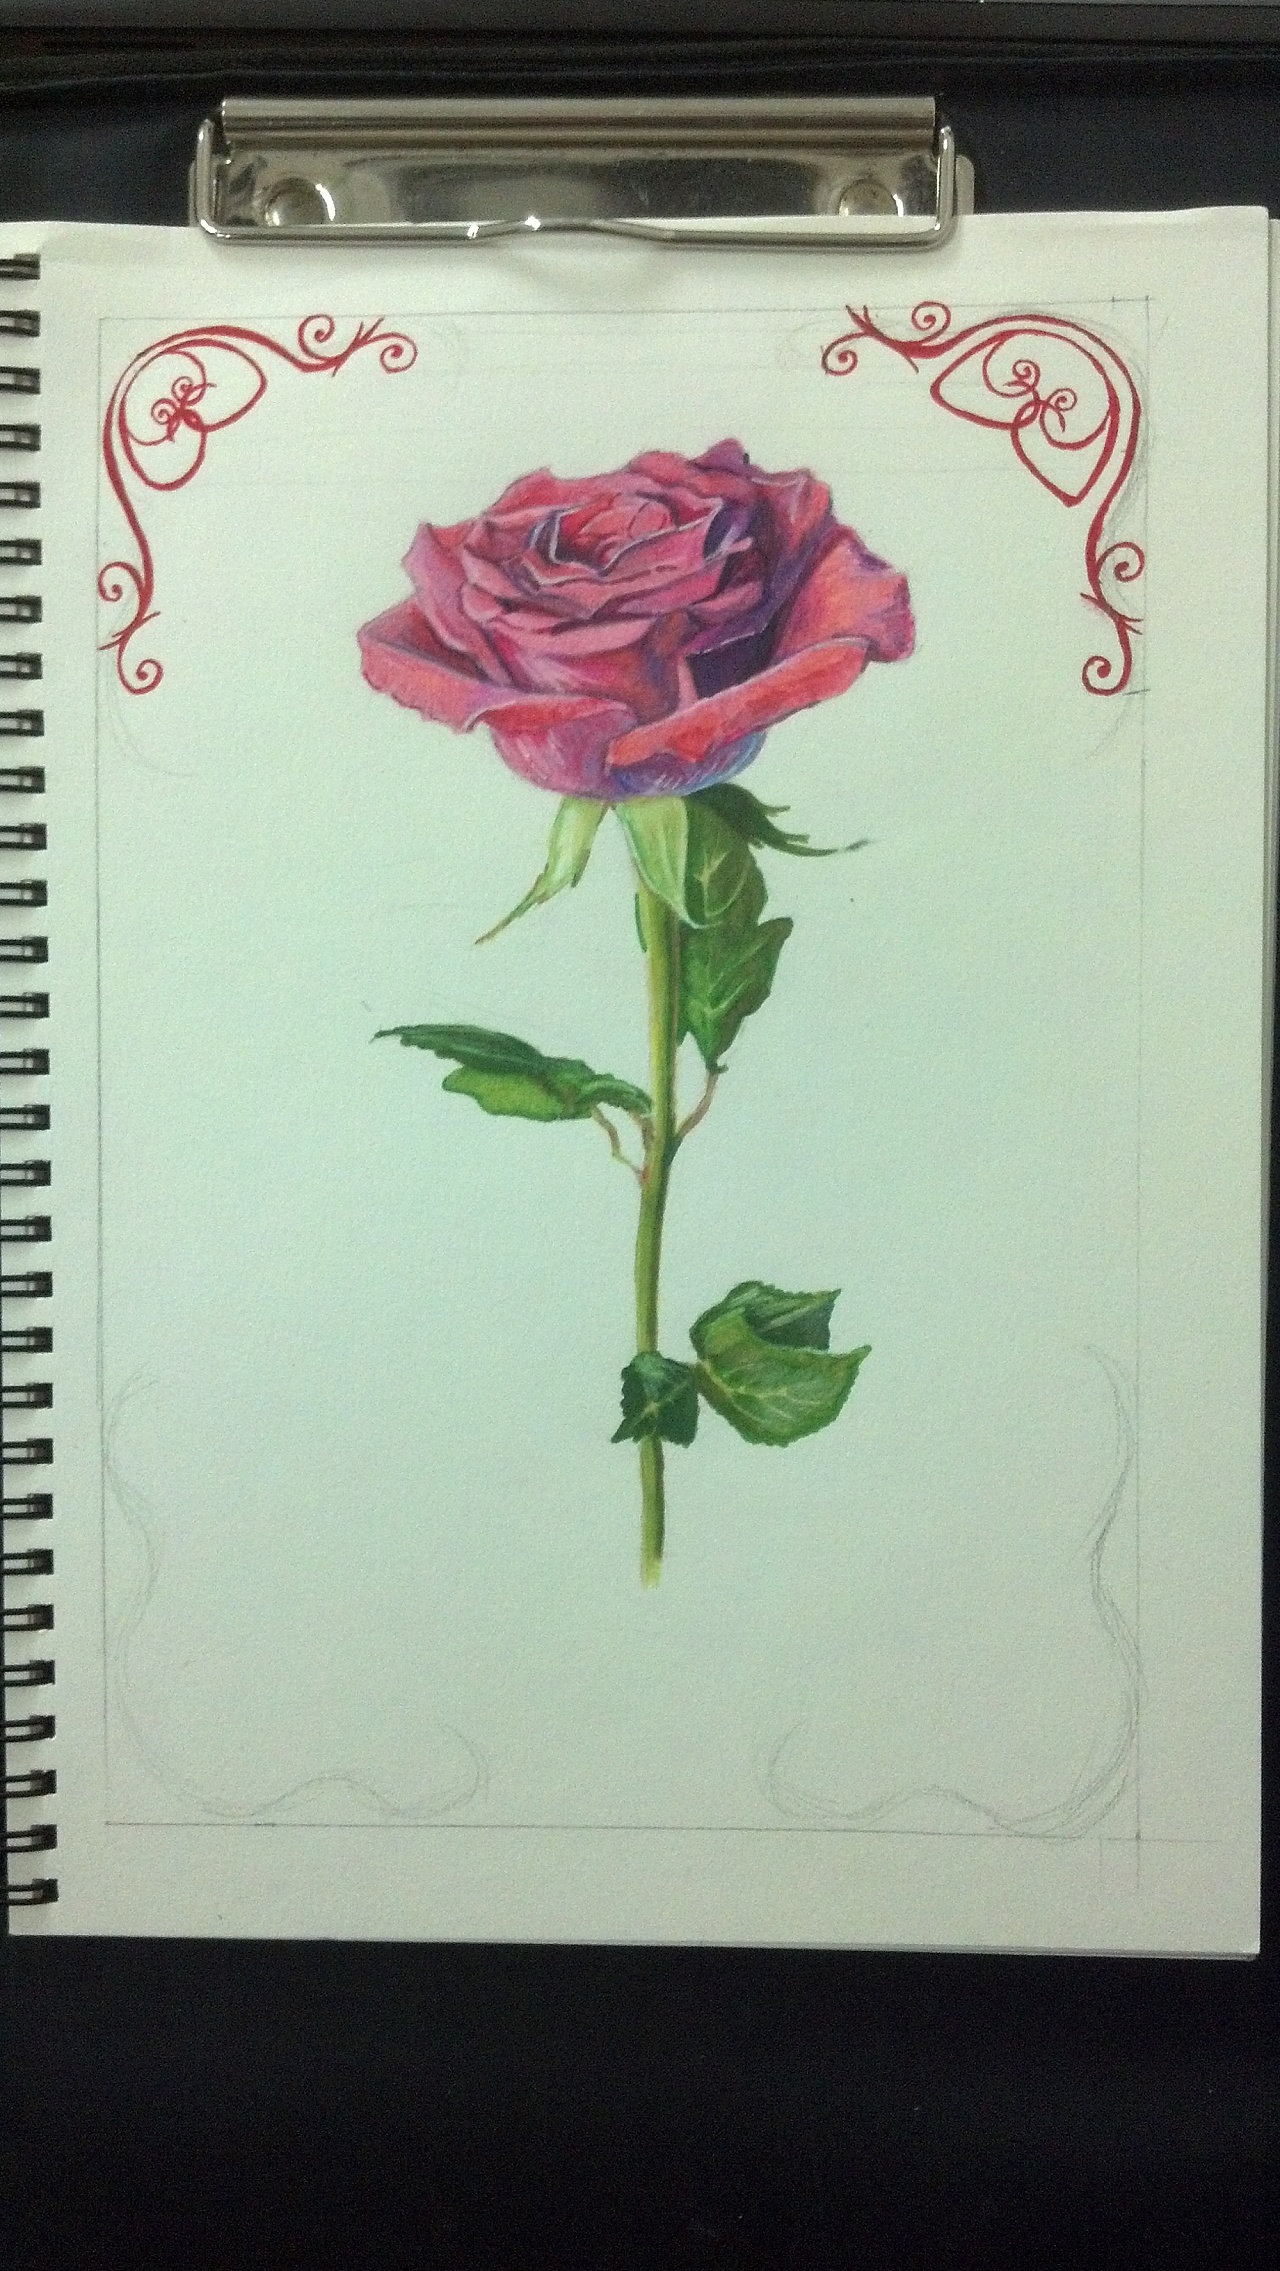 玫瑰整体上色完成,添加一个边框